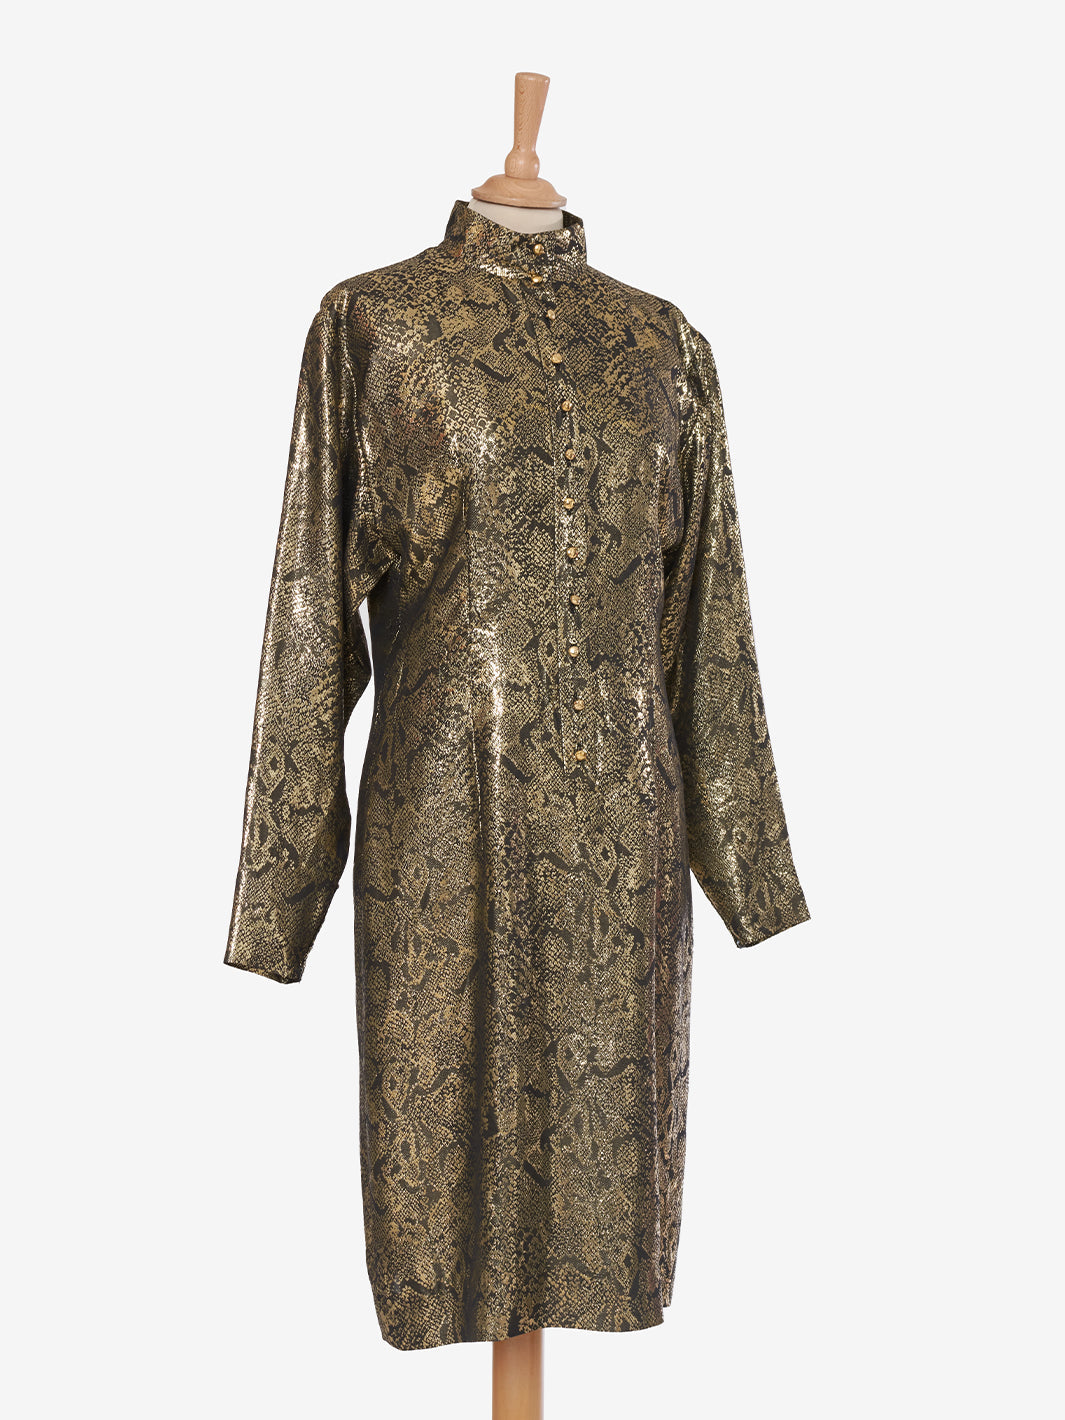 Scherrer Gold Print Dress